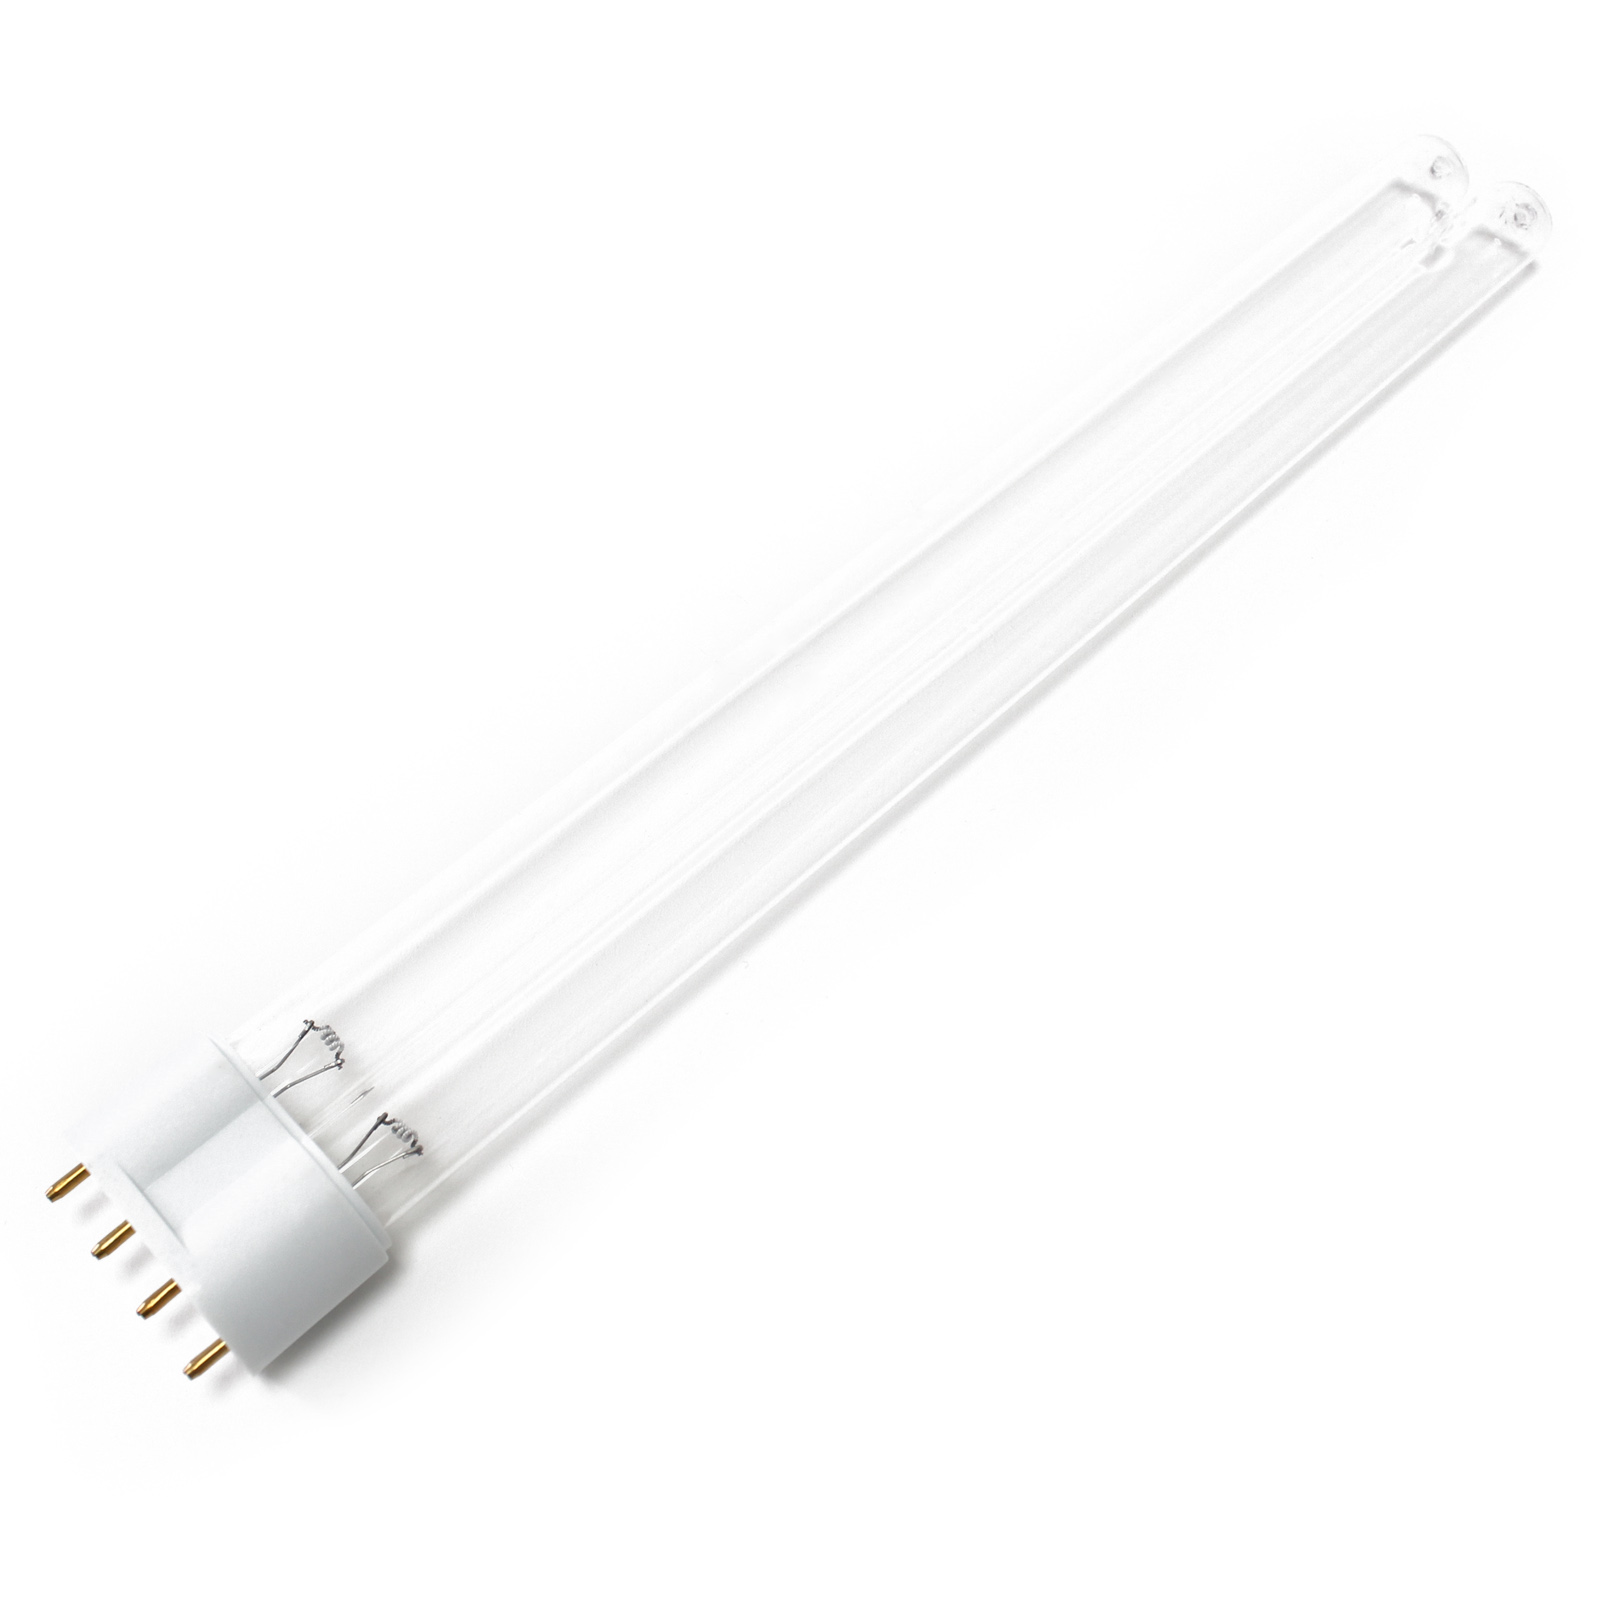 CUV-218 UV-C Lampe Röhre 18W Teich-Klärer UVC Leuchtmittel